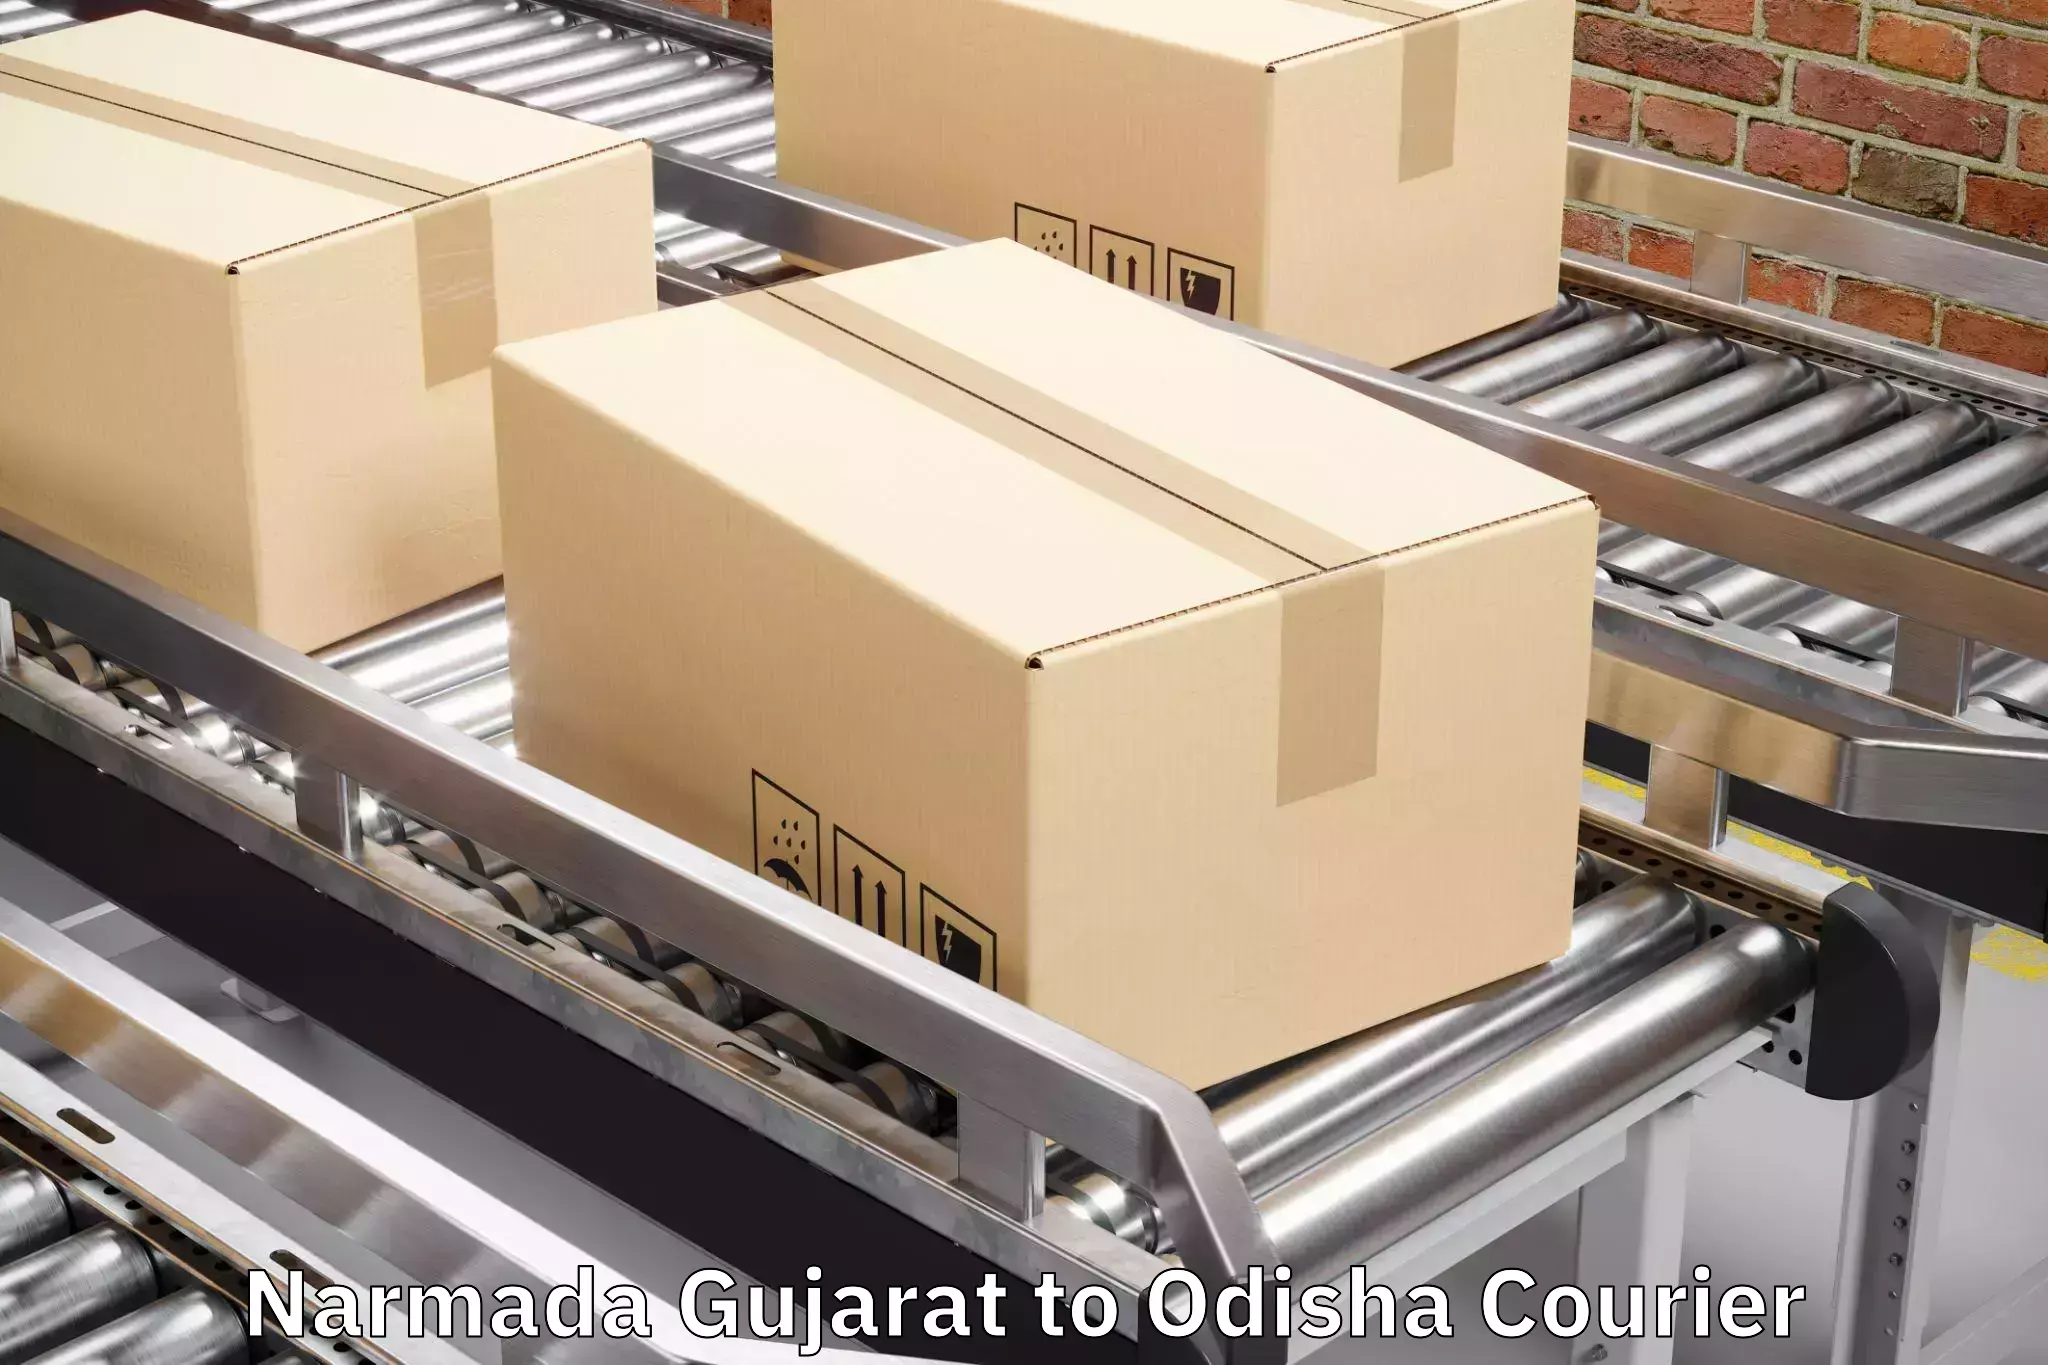 Baggage delivery planning Narmada Gujarat to Basta